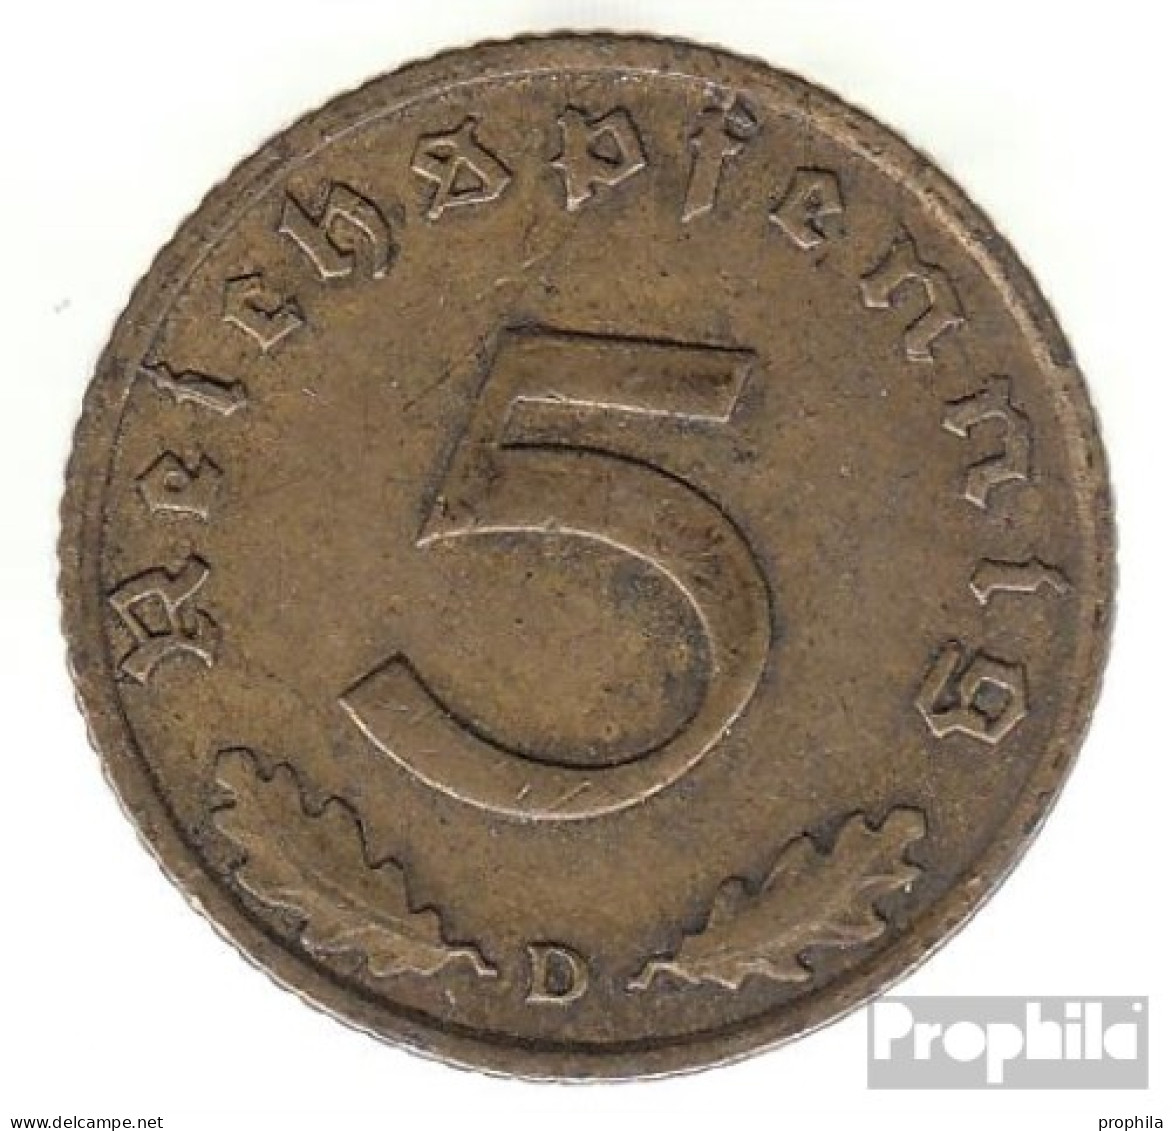 Deutsches Reich Jägernr: 363 1938 A Vorzüglich Aluminium-Bronze Vorzüglich 1938 5 Reichspfennig Reichsadler - 5 Reichspfennig